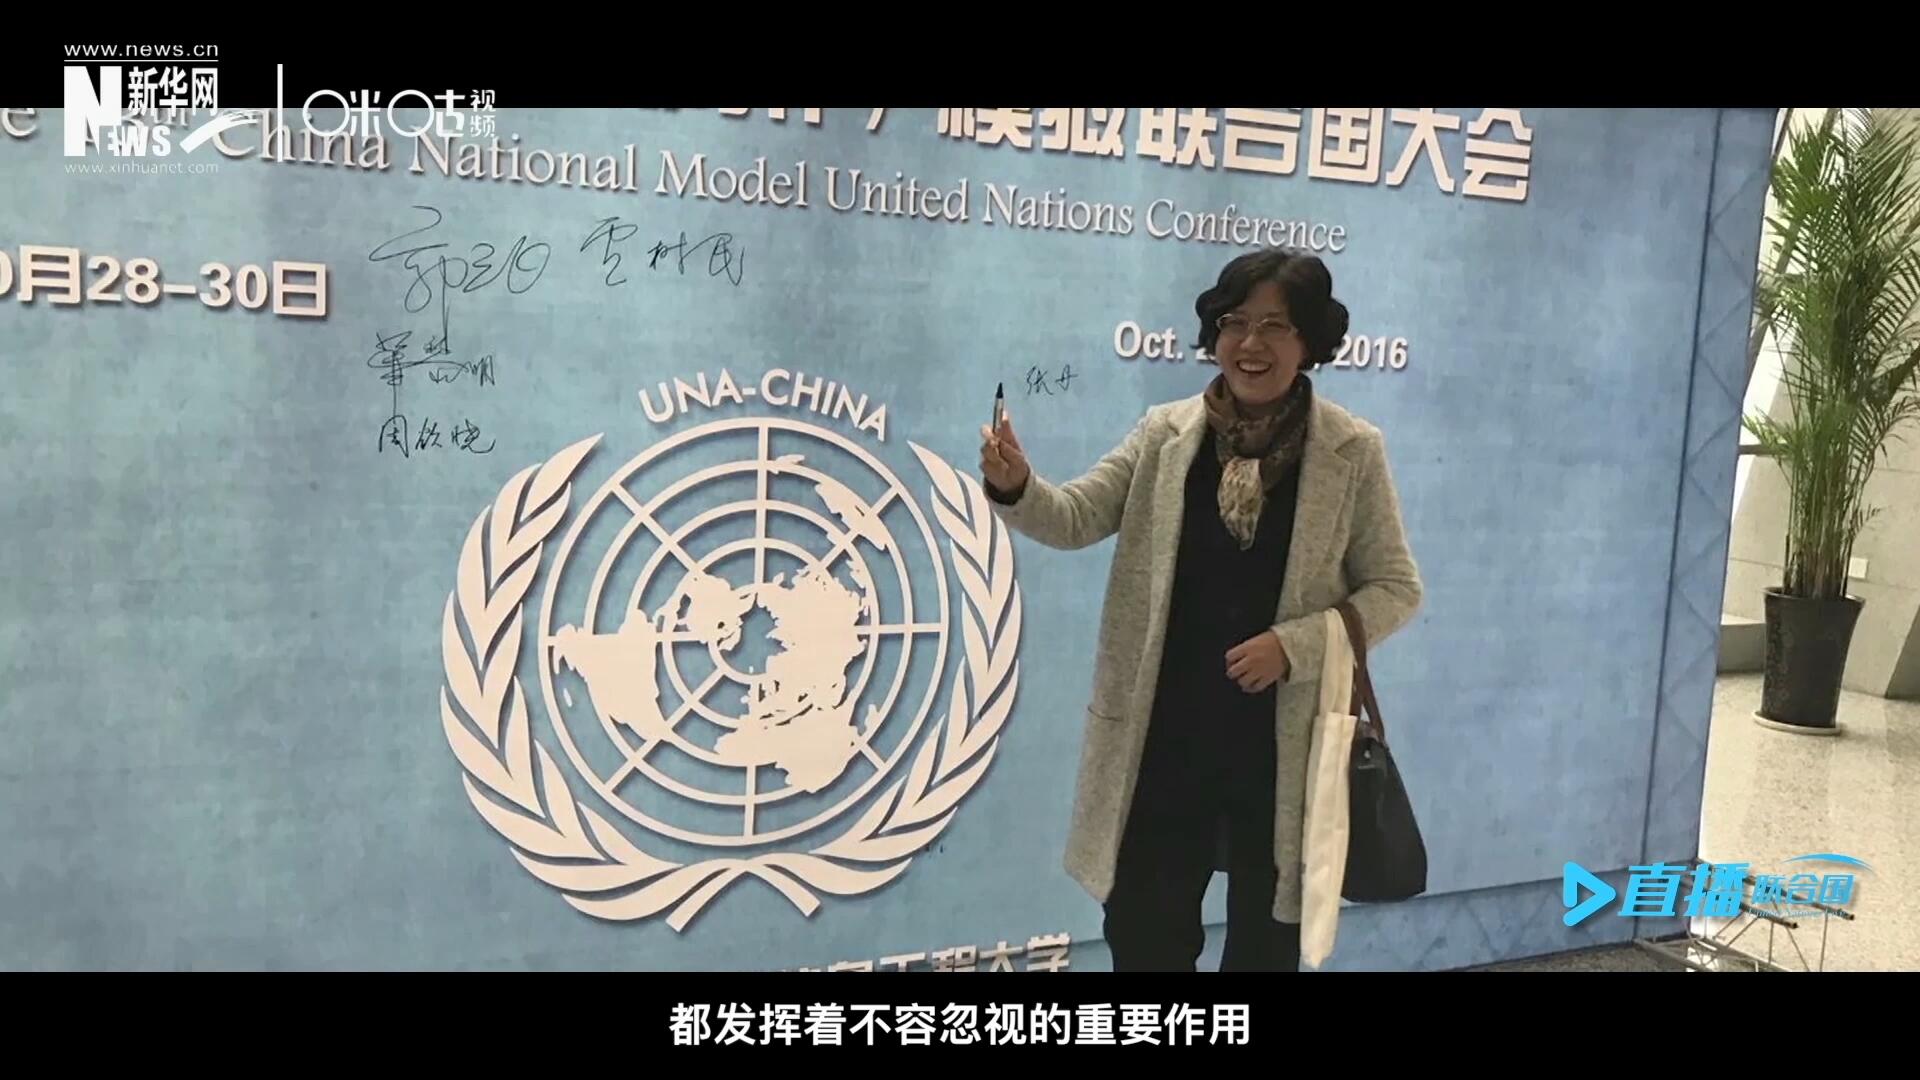 中国联合国协会，是中国唯一一家以推动实现联合国宪章宗旨和原则为宗旨的全国性非政府组织。